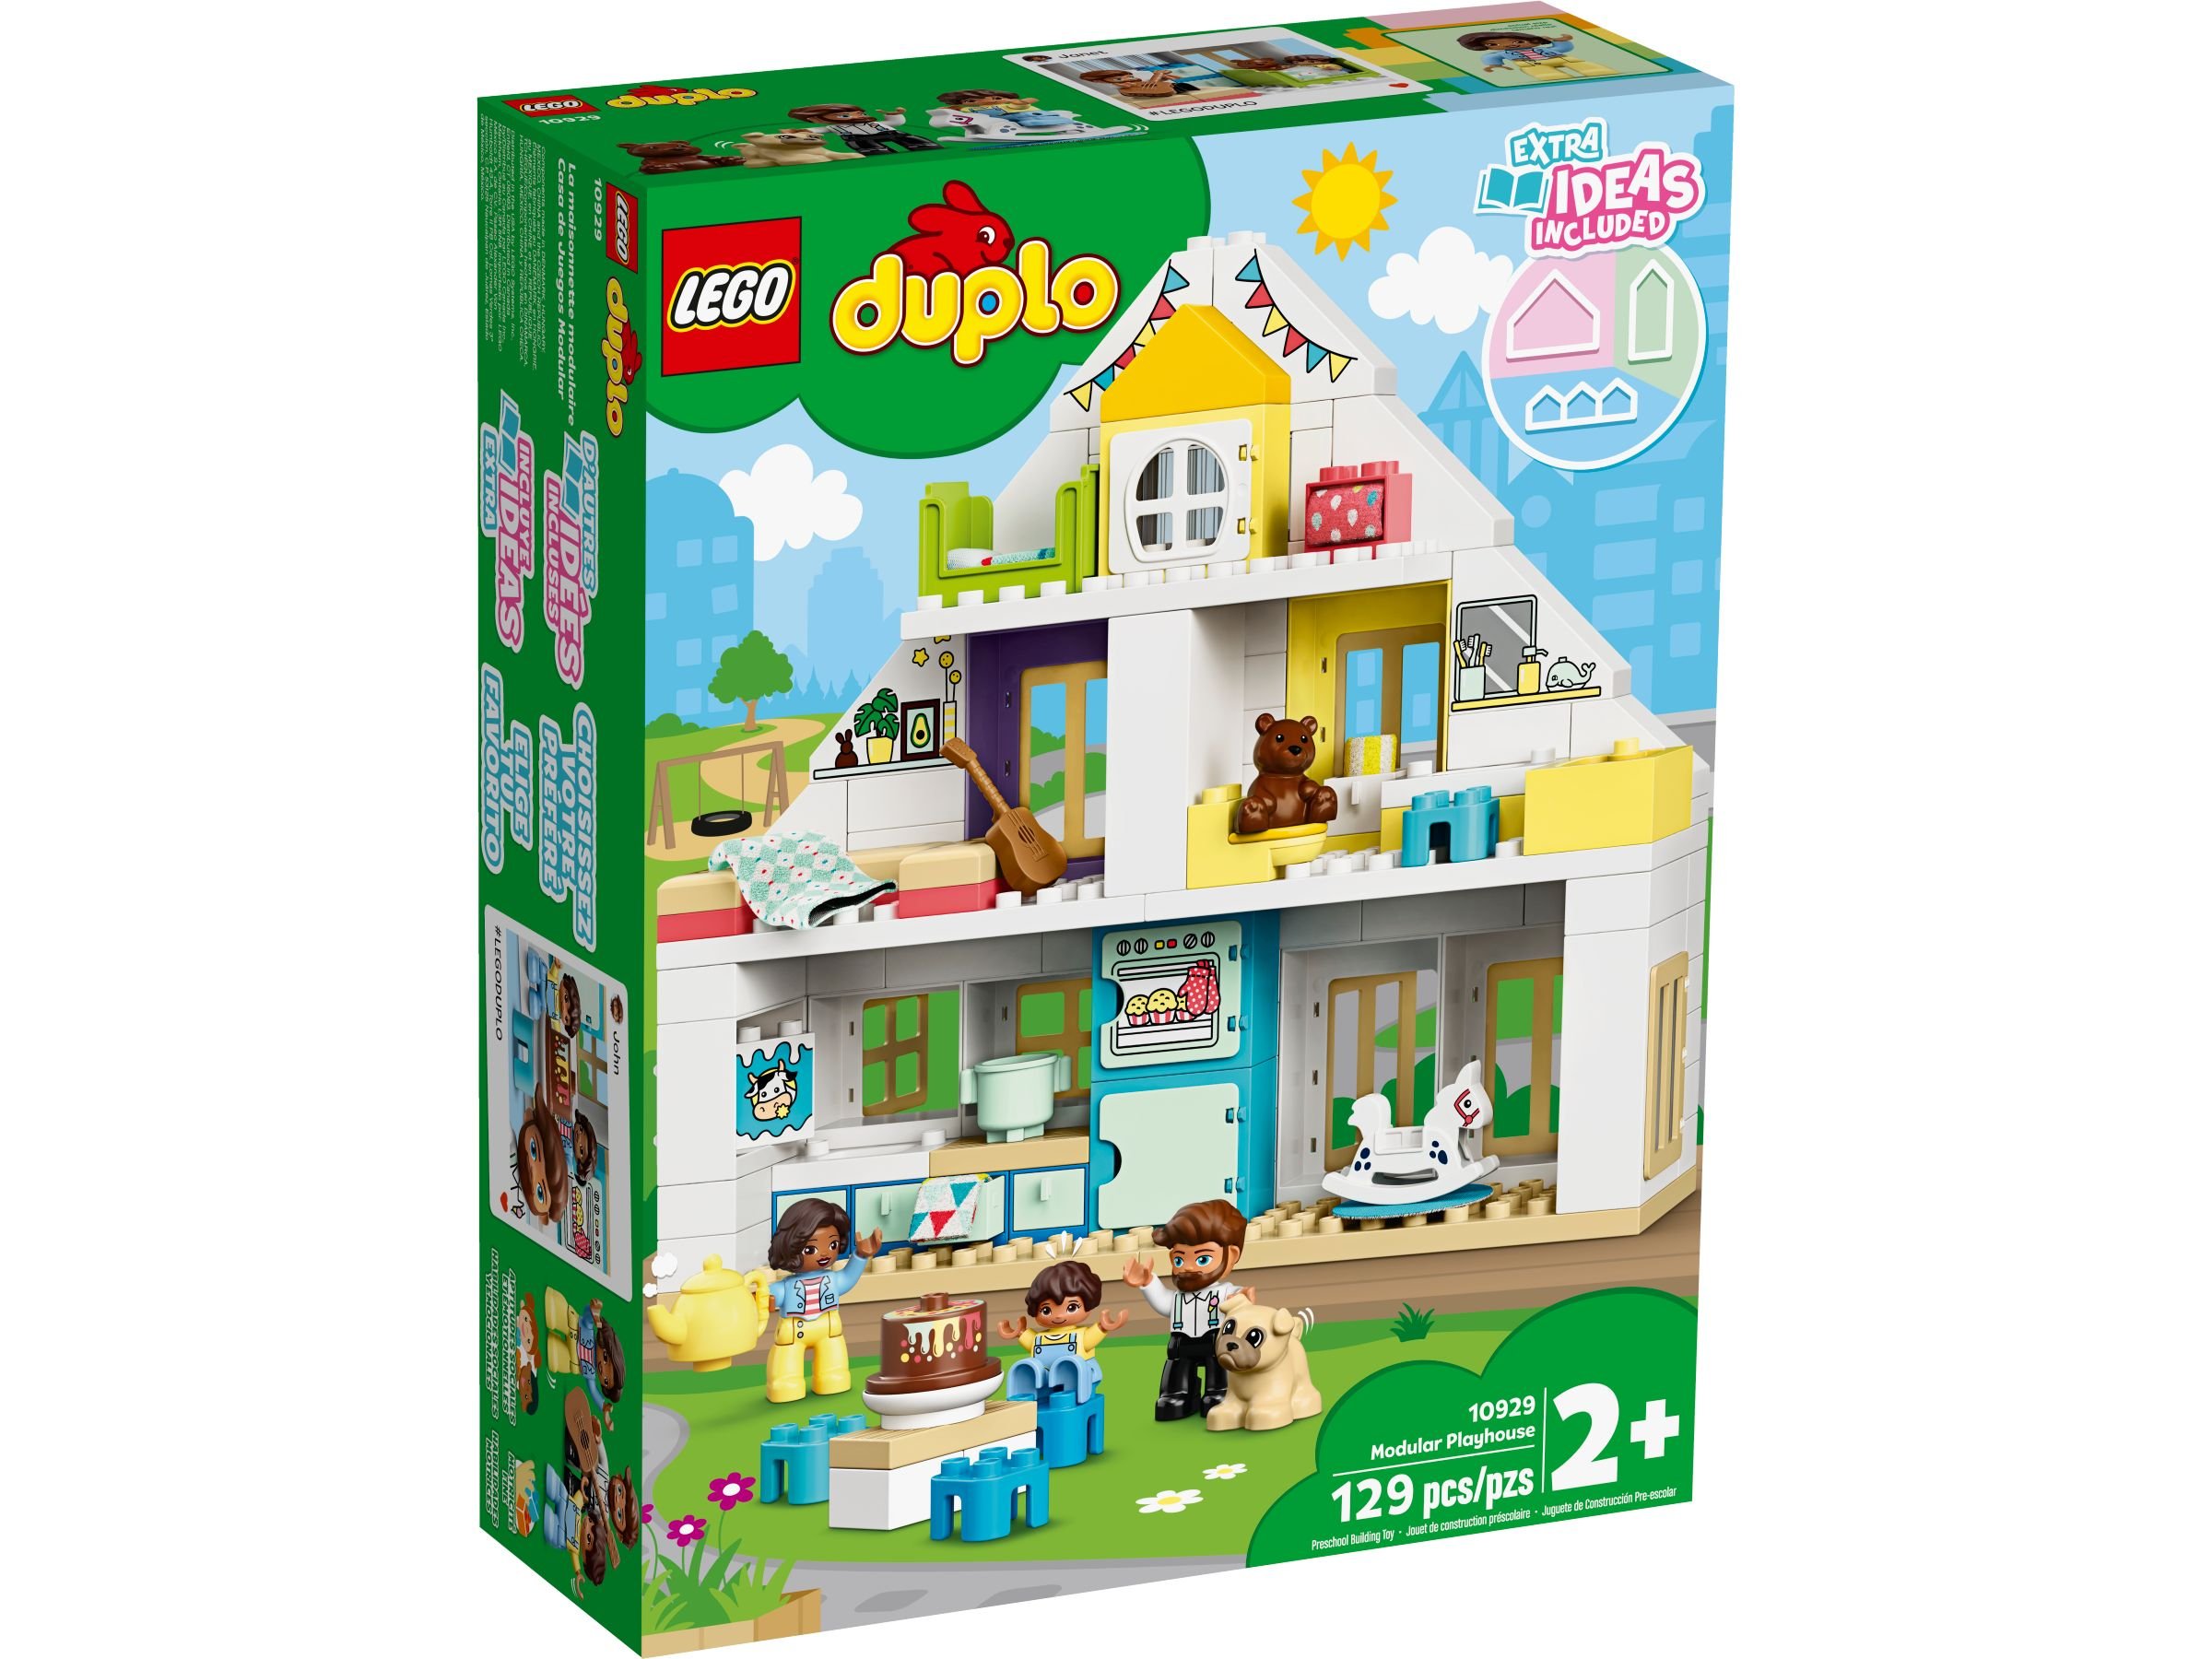 LEGO Duplo 10929 Unser Wohnhaus LEGO_10929_alt1.jpg